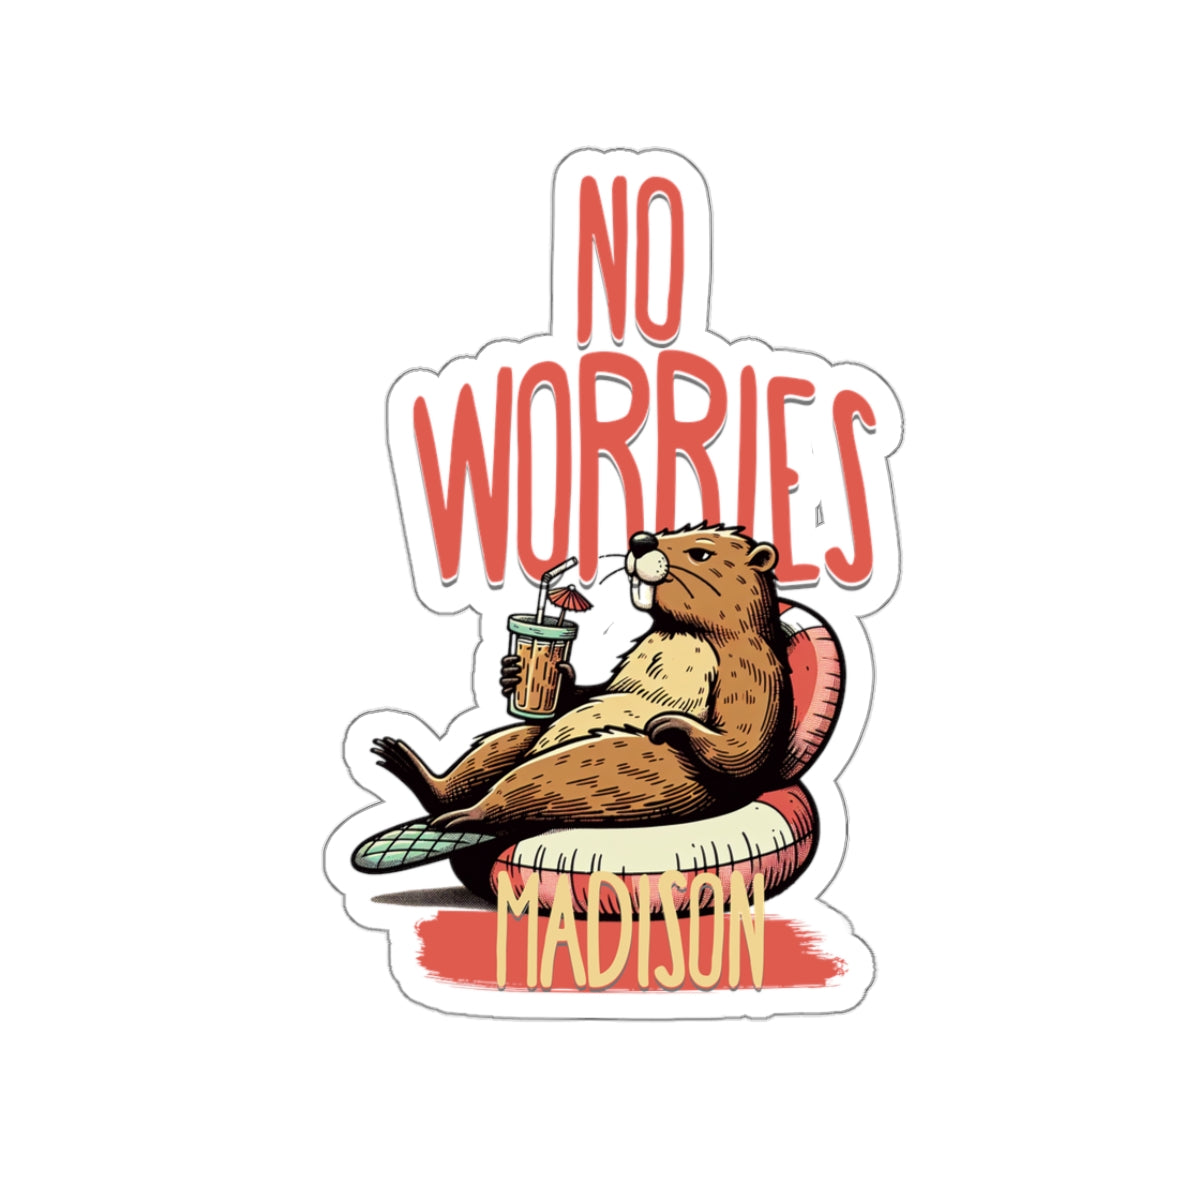 No Worries Beaver Custom Sticker, Retro Custom Sticker, Personalized Groovy Sticker, Custom Hippie Sticker